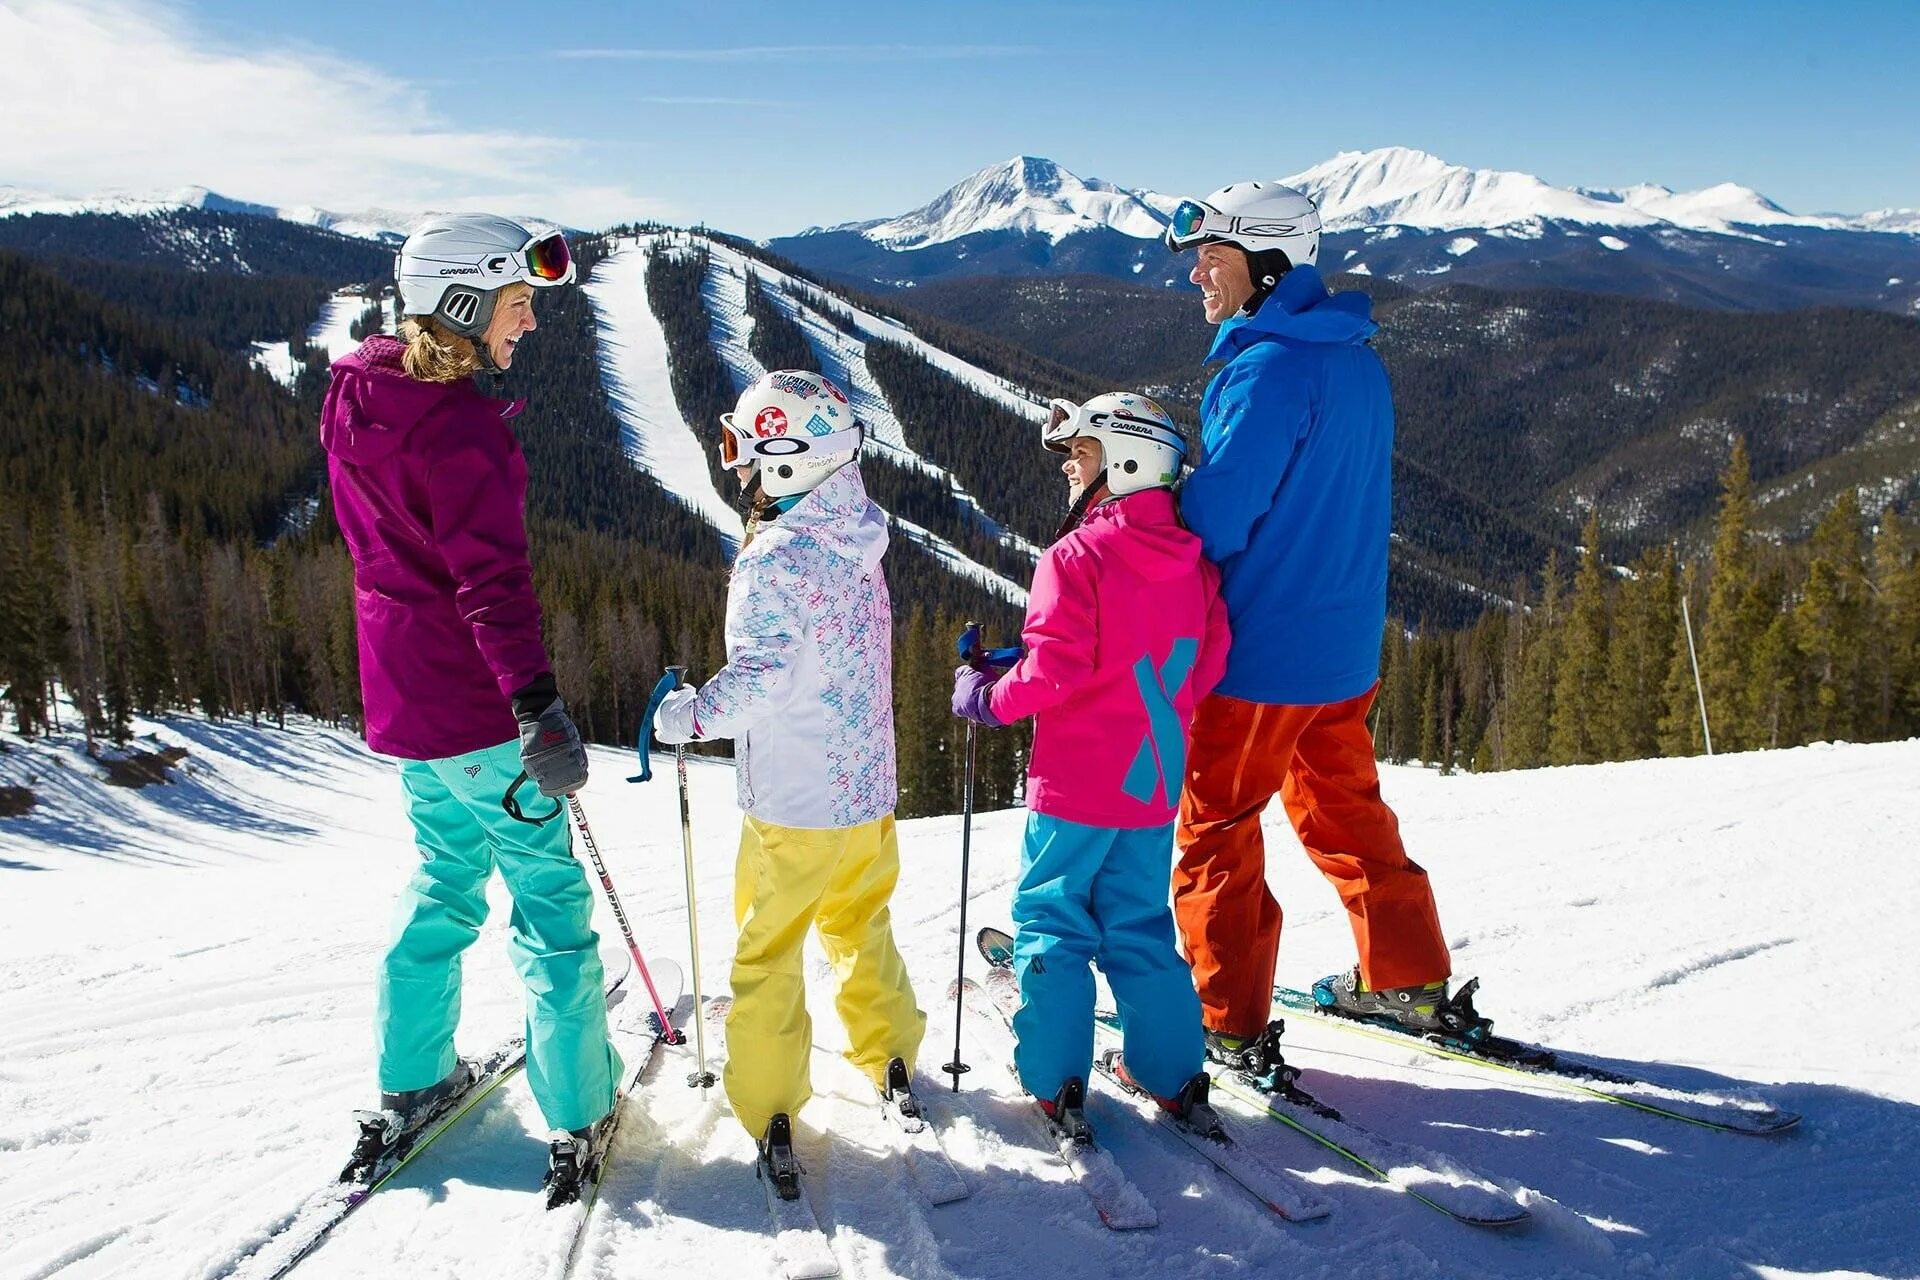 Покататься на горнолыжном курорте. Катание на горных лыжах. Семья на горных лыжах. На лыжах всей семьей. Семья на сноубордах.